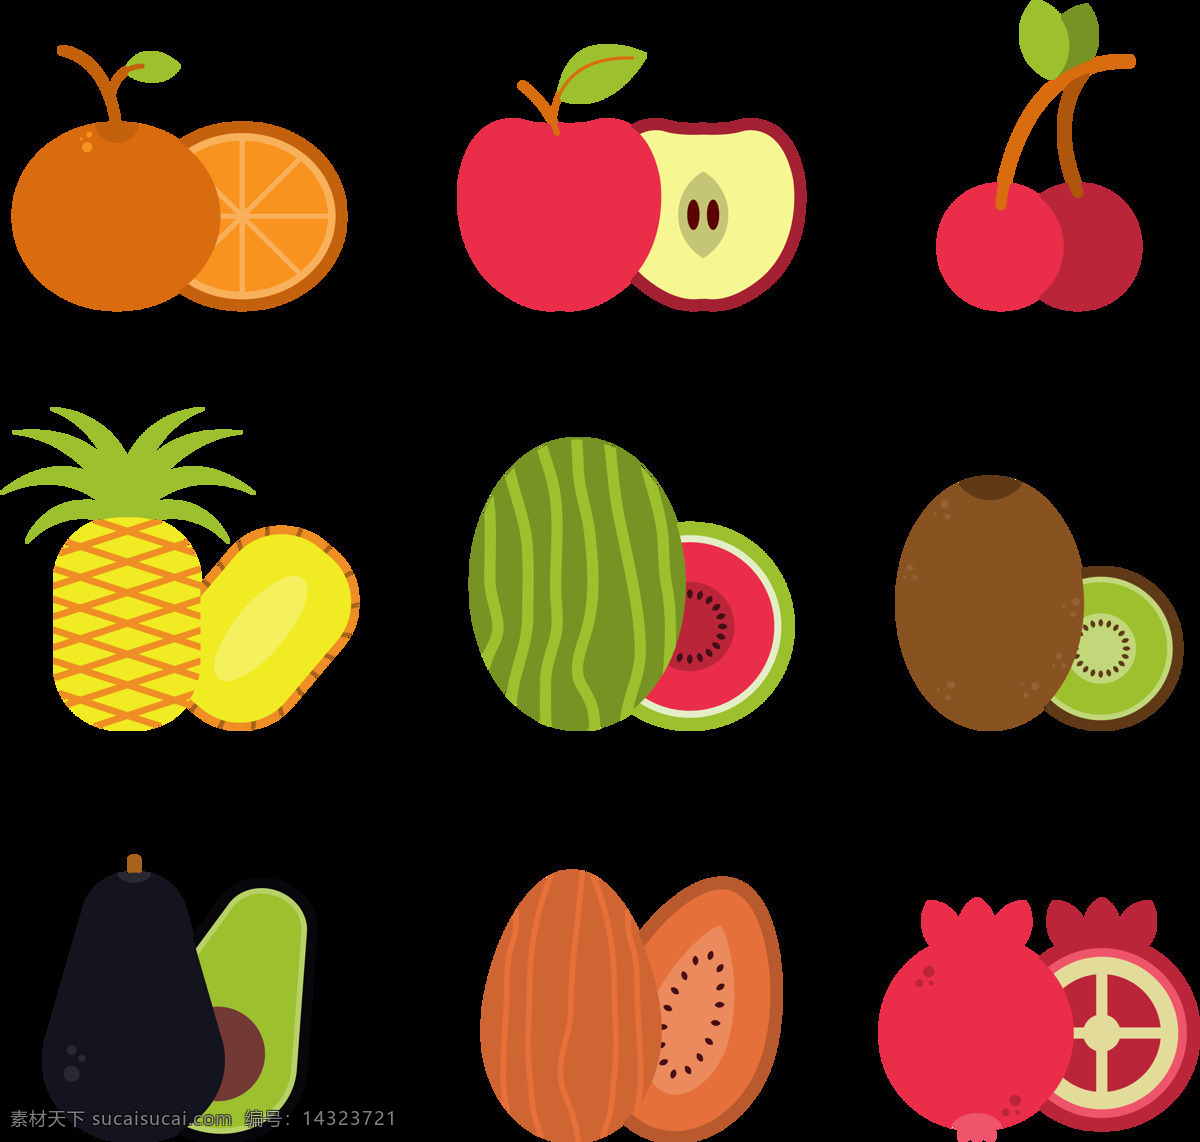 各种 水果 图标 免 抠 透明 图 层 彩色水果 水果手绘 彩色素材 彩色手绘 清新素材 手绘水果素材 夏日 彩色 手绘水果 水果素材 手绘素材 清新水果 素材水果